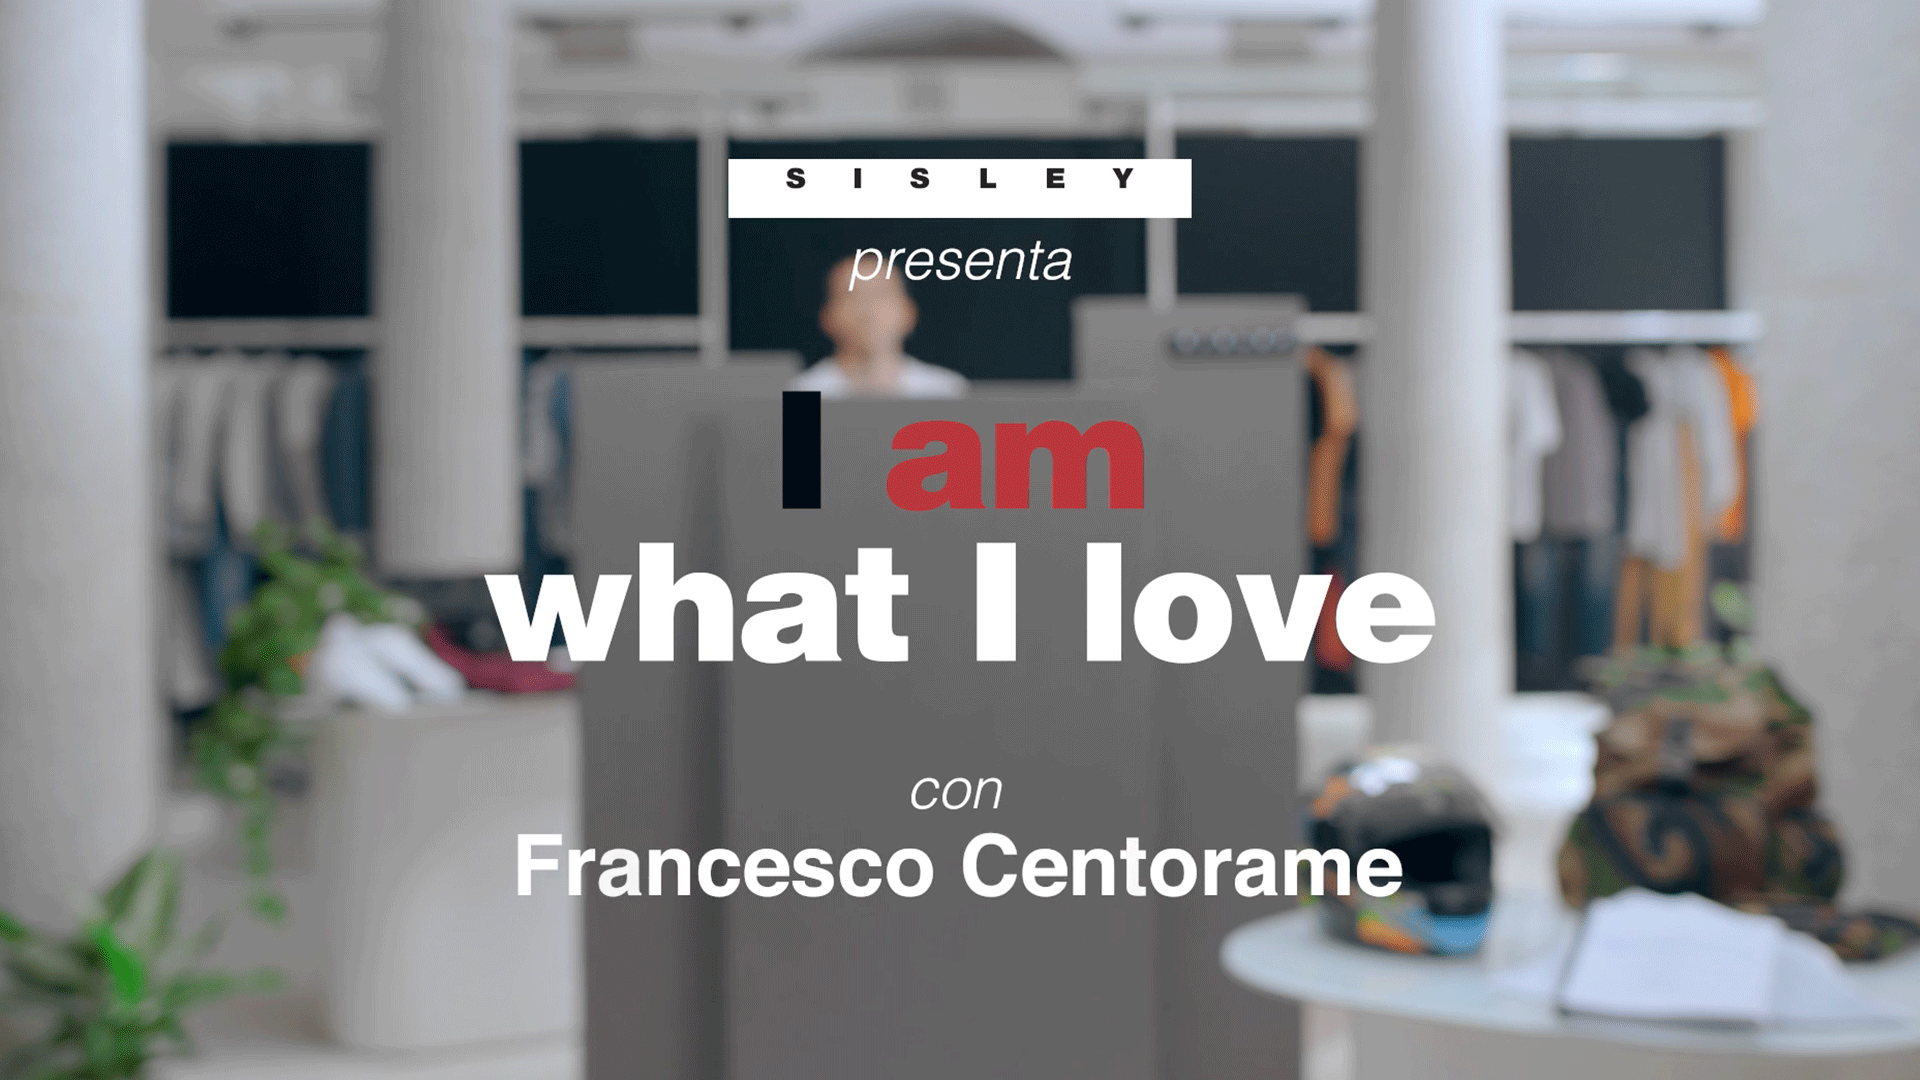 UV_SISLEY---I-am-what-I-am-Francesco-Centorame